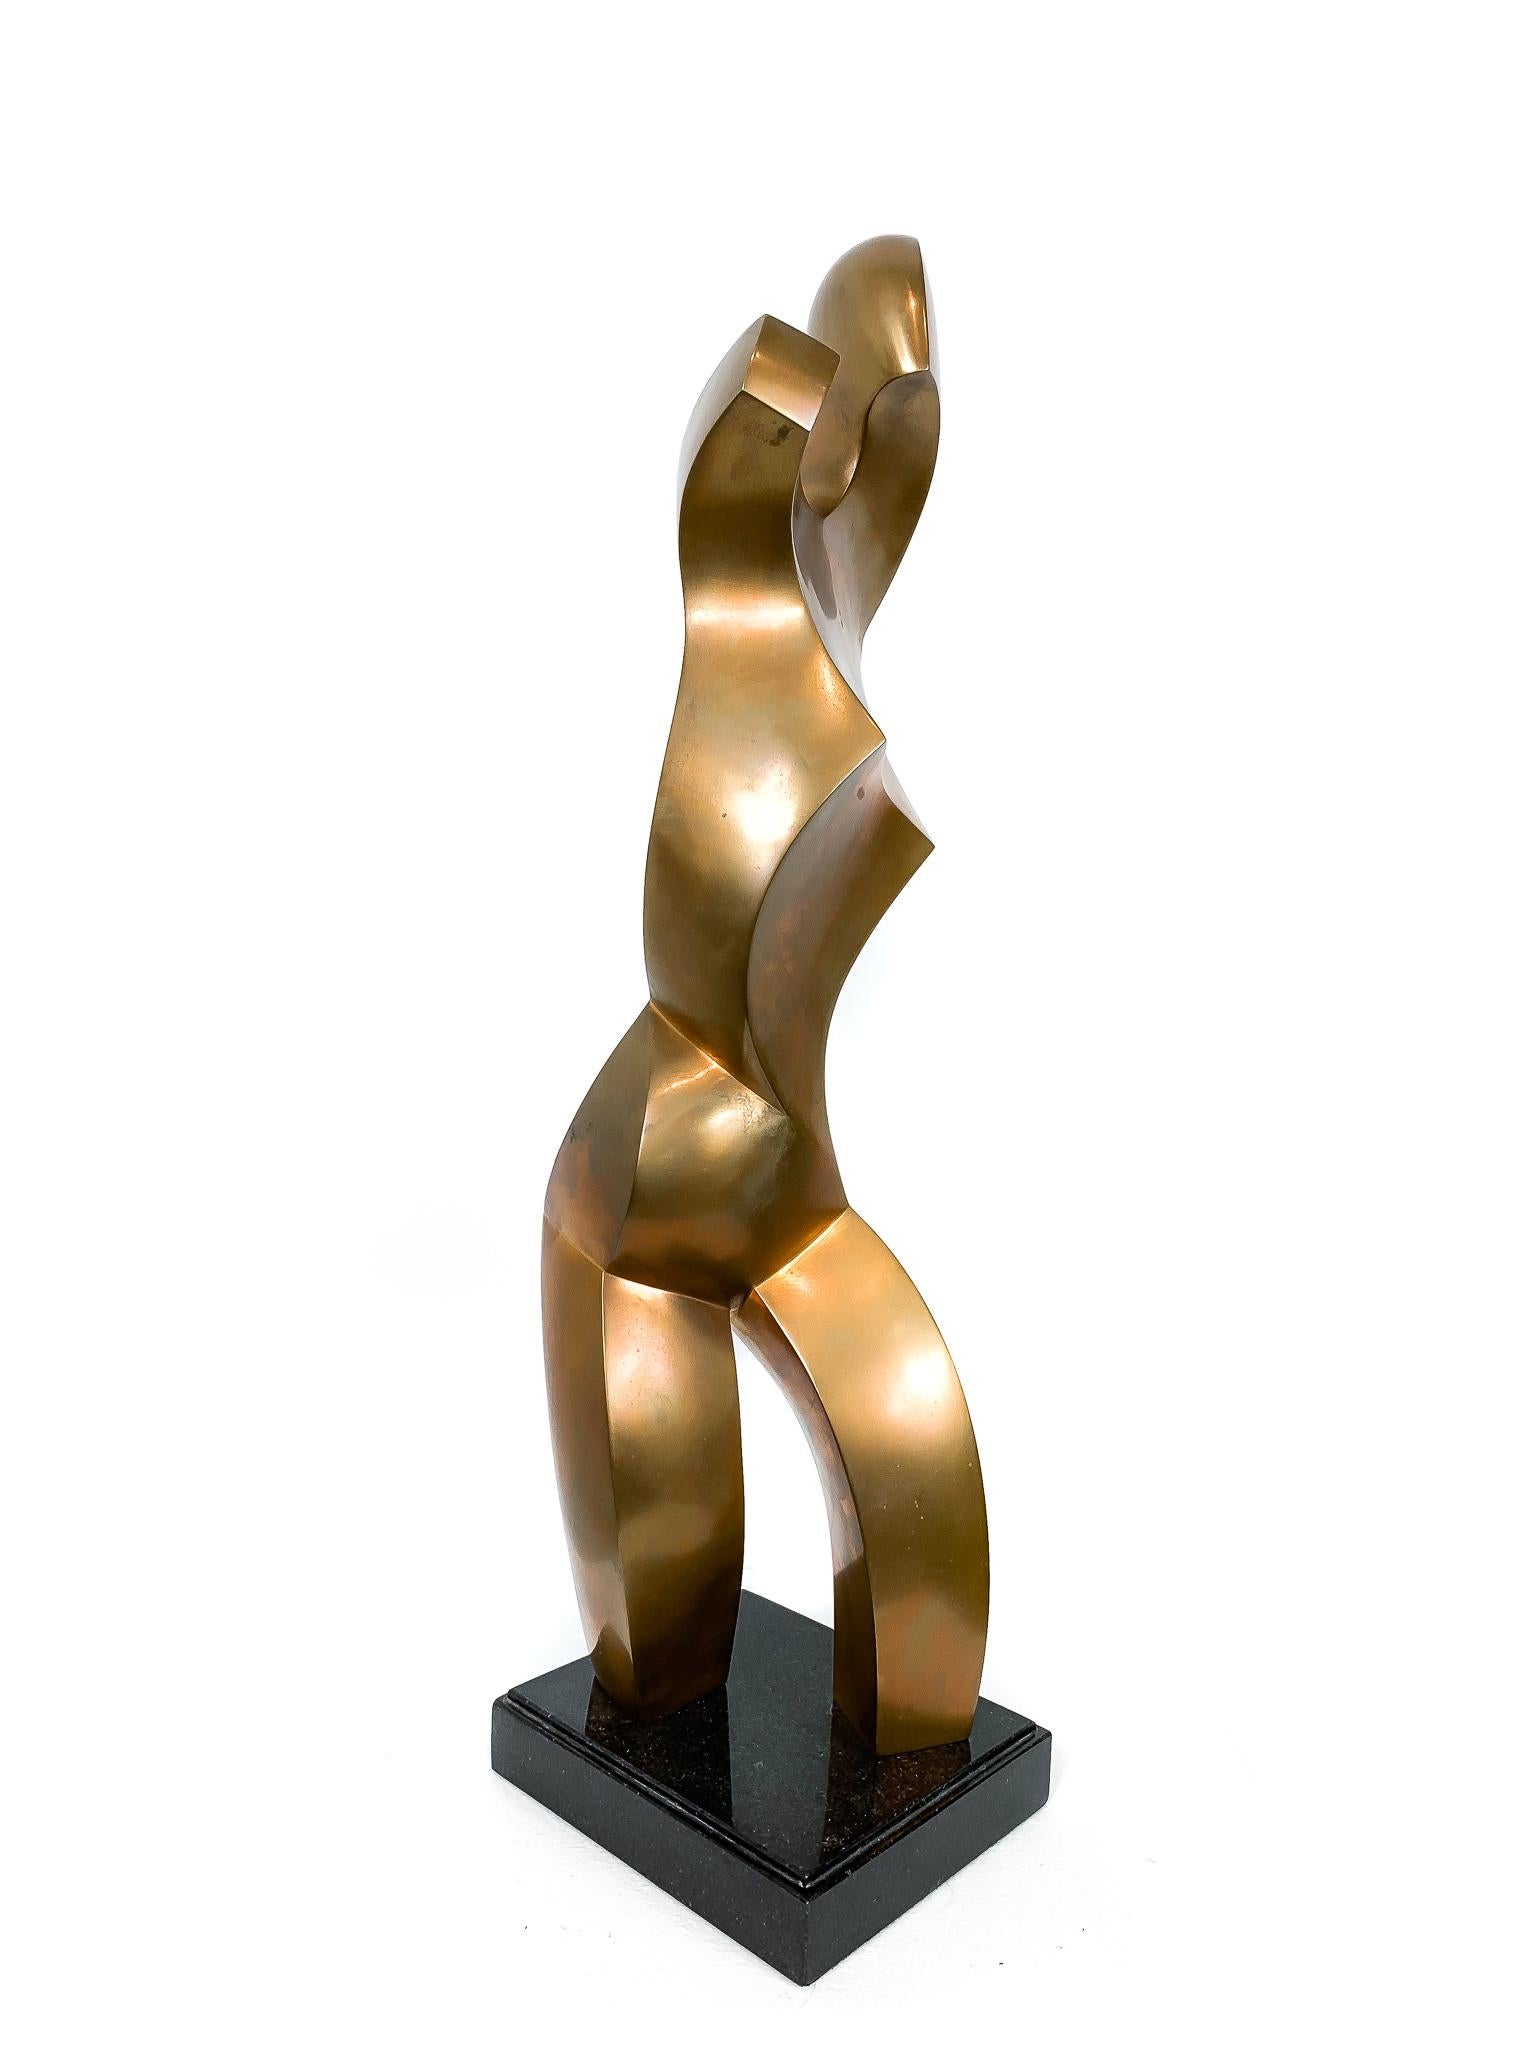 Auflage 1/8
Medium: Natürliche Bronze

Jim Ritchie (1929-2017), geboren in Montreal, Kanada, ist bekannt für seine Pastellzeichnungen und Bronzeskulpturen. Stilistisch ist er mit dem Kubismus, dem abstrakten figurativen Werk und dem Modernismus